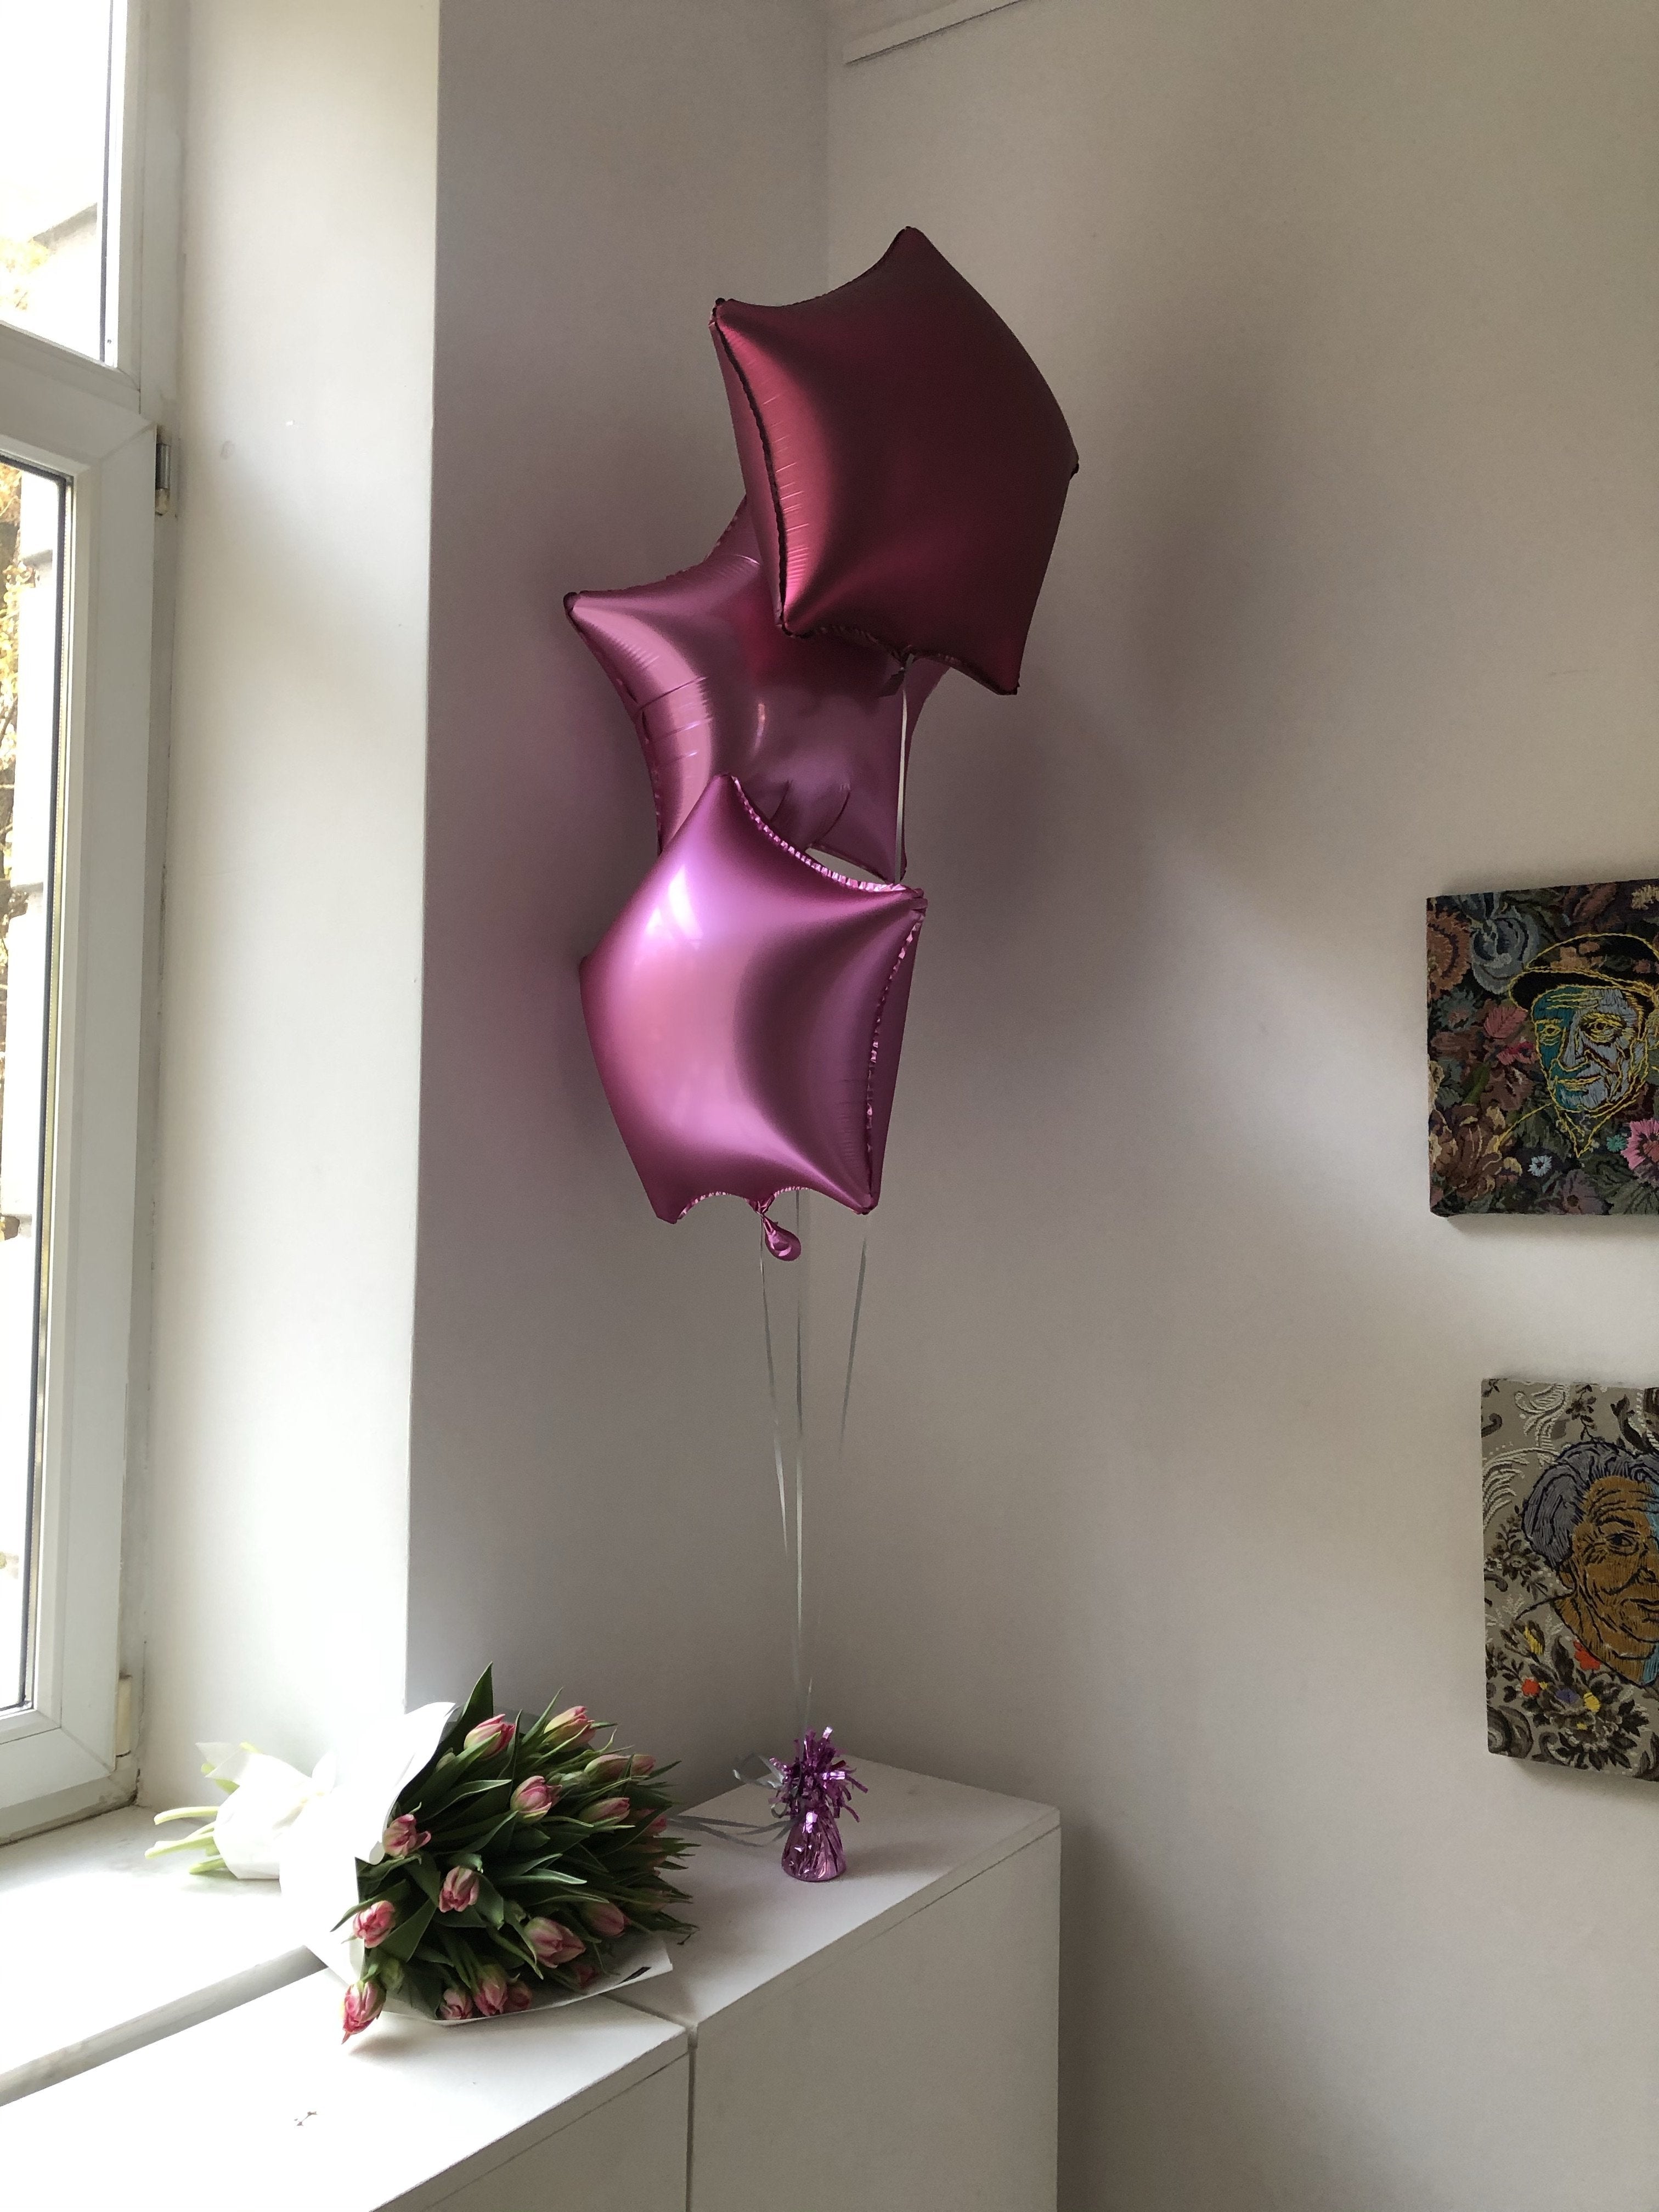 3 Helium balloons